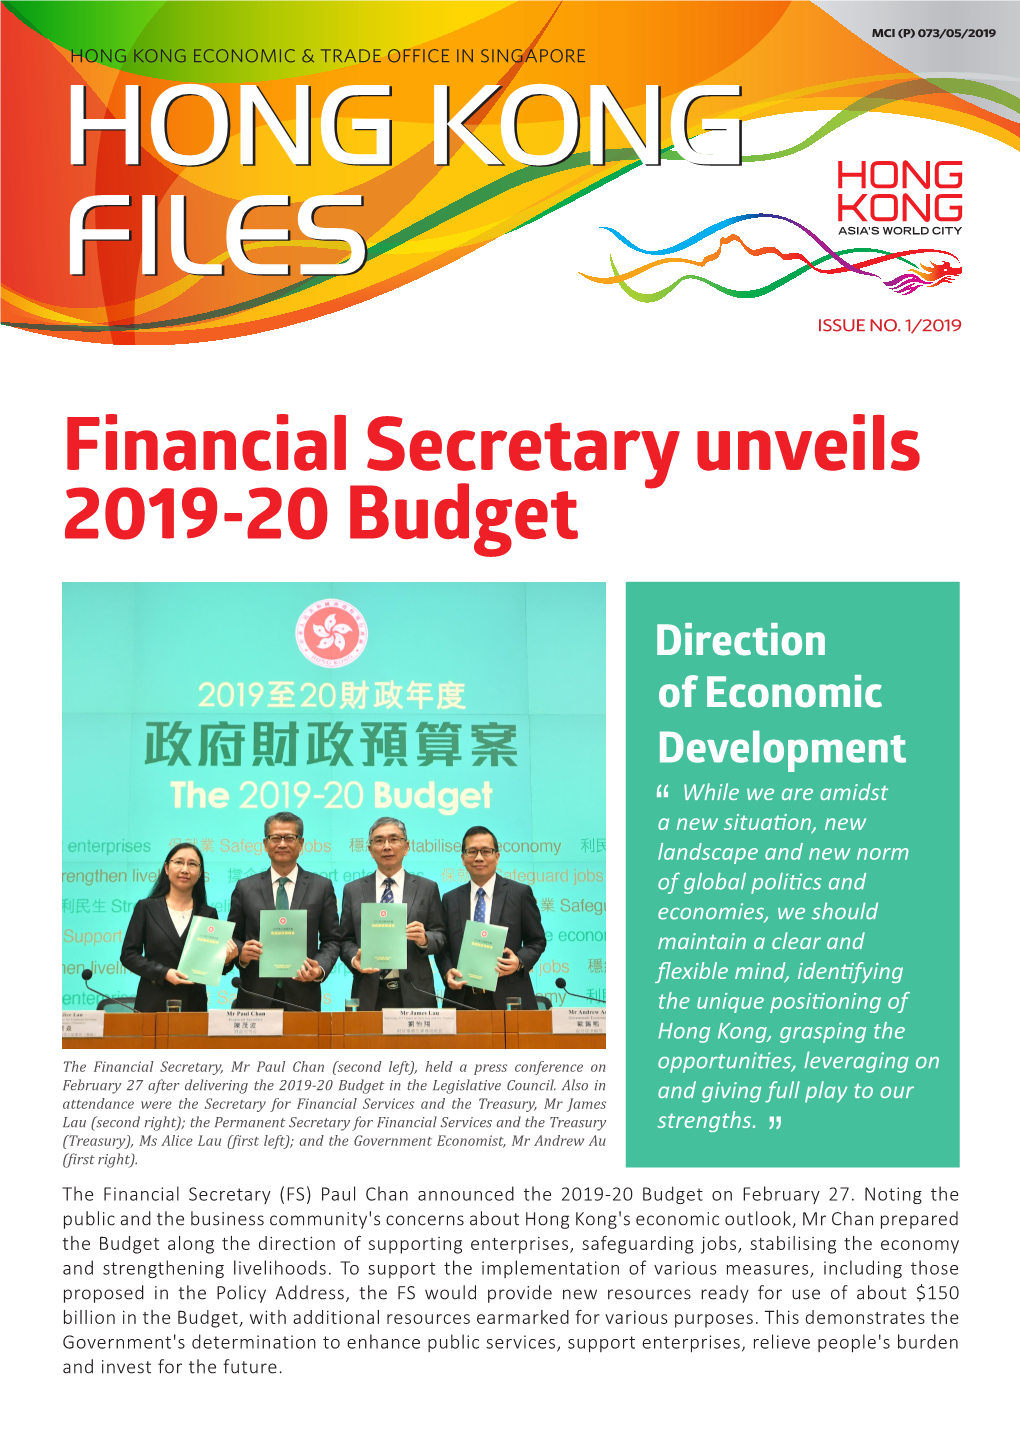 Financial Secretary Unveils 2019-20 Budget